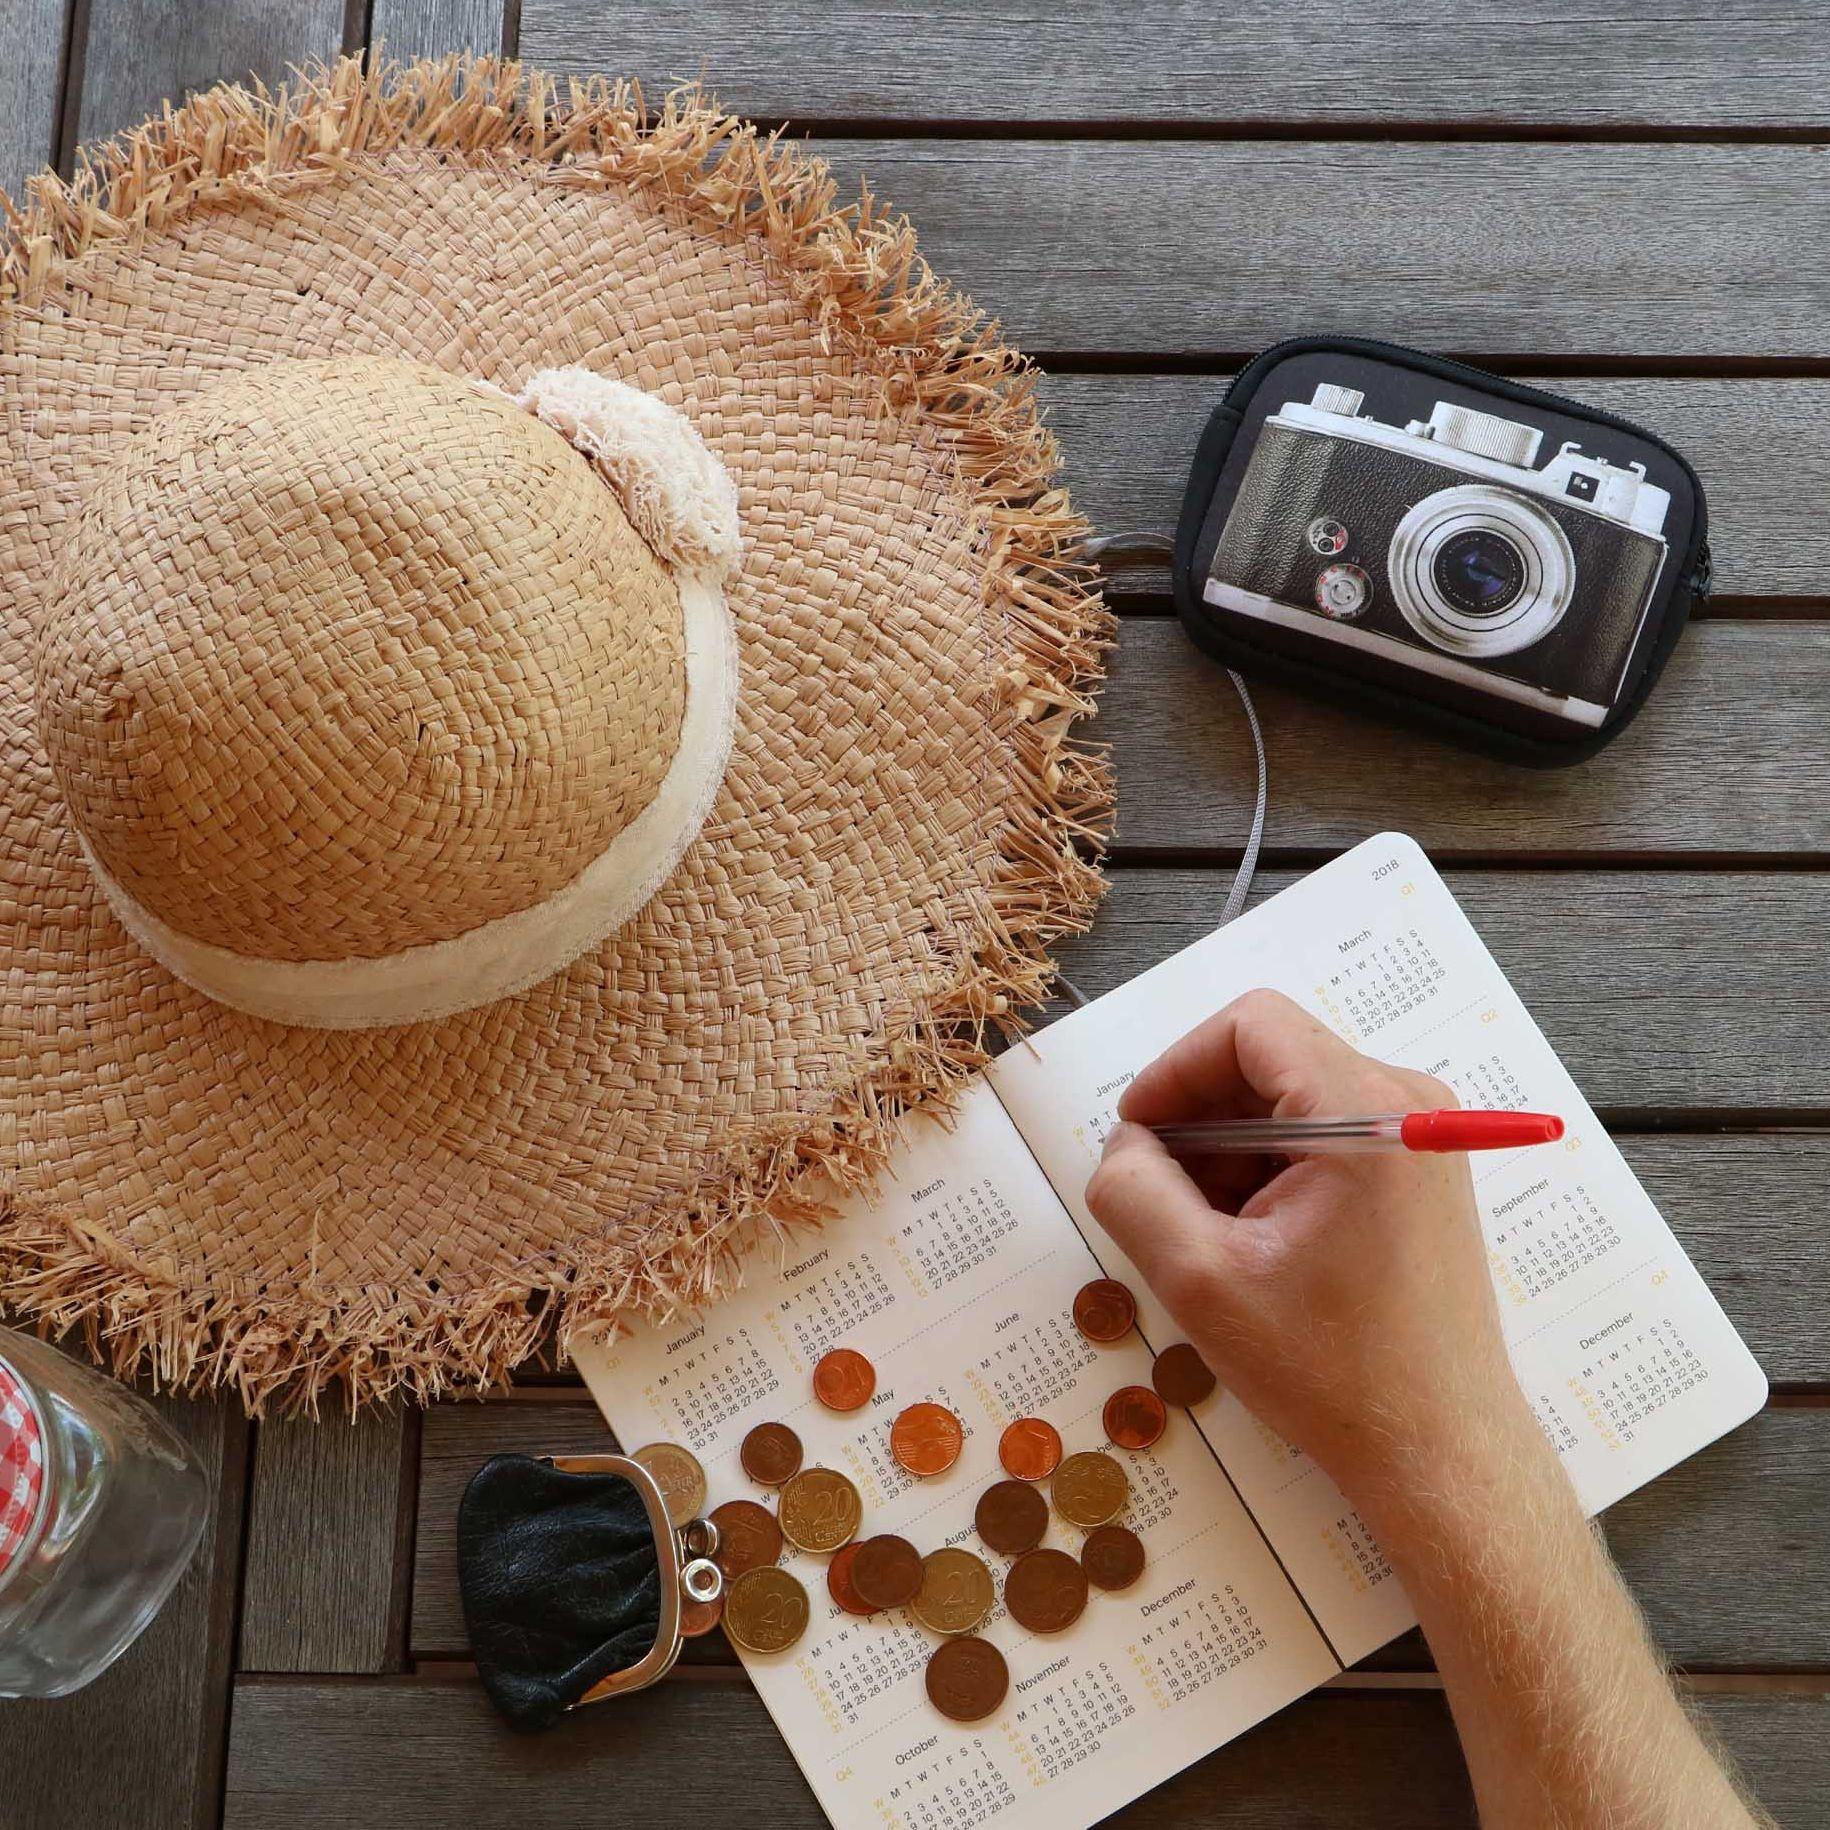 Ein Strohhut, Kleingeld, ein Trinkglas mit Deckel und Strohhalm, eine Kamera und eine Kalender liegen auf einem Tisch. Eine Hand schreibt mit einem Kugelschreiber etwas in den Kalender